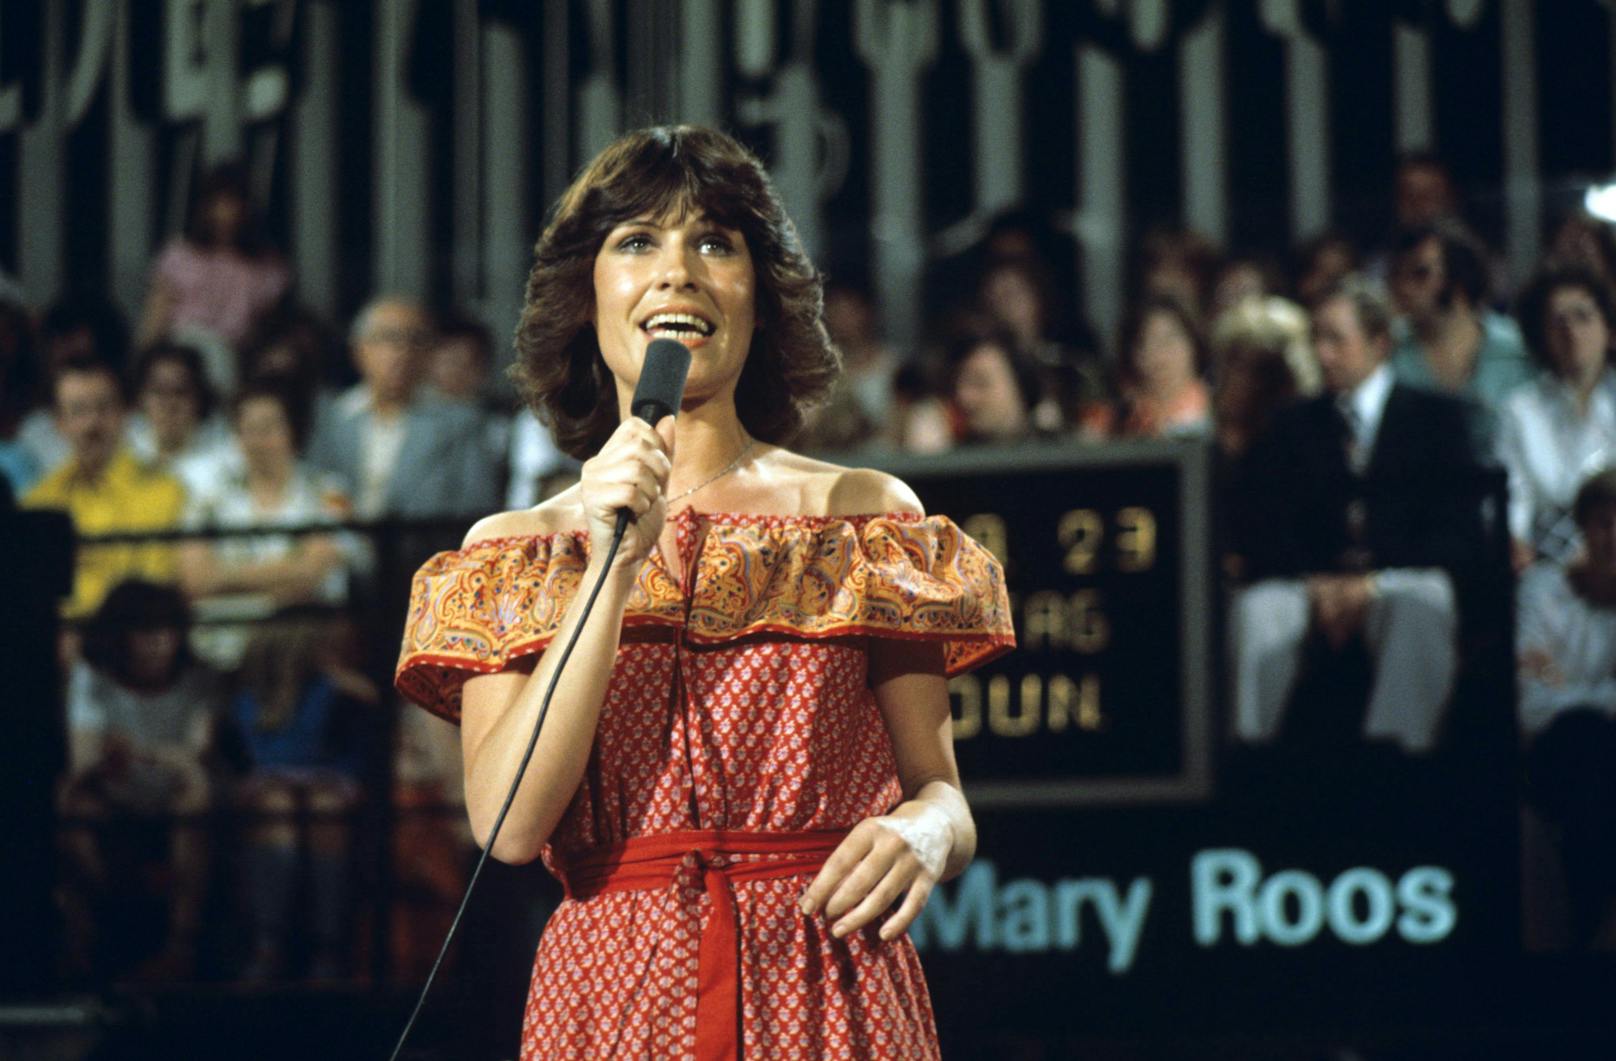 Mit Hits wie "Arizona Man", "Aufrecht geh'n" oder "Discozeitmaschine" zählt Mary Roos zu den erfolgreichsten Schlagerstars im deutschsprachigen Raum. Gleich zwei Mal vertrat sie Deutschland beim ESC.